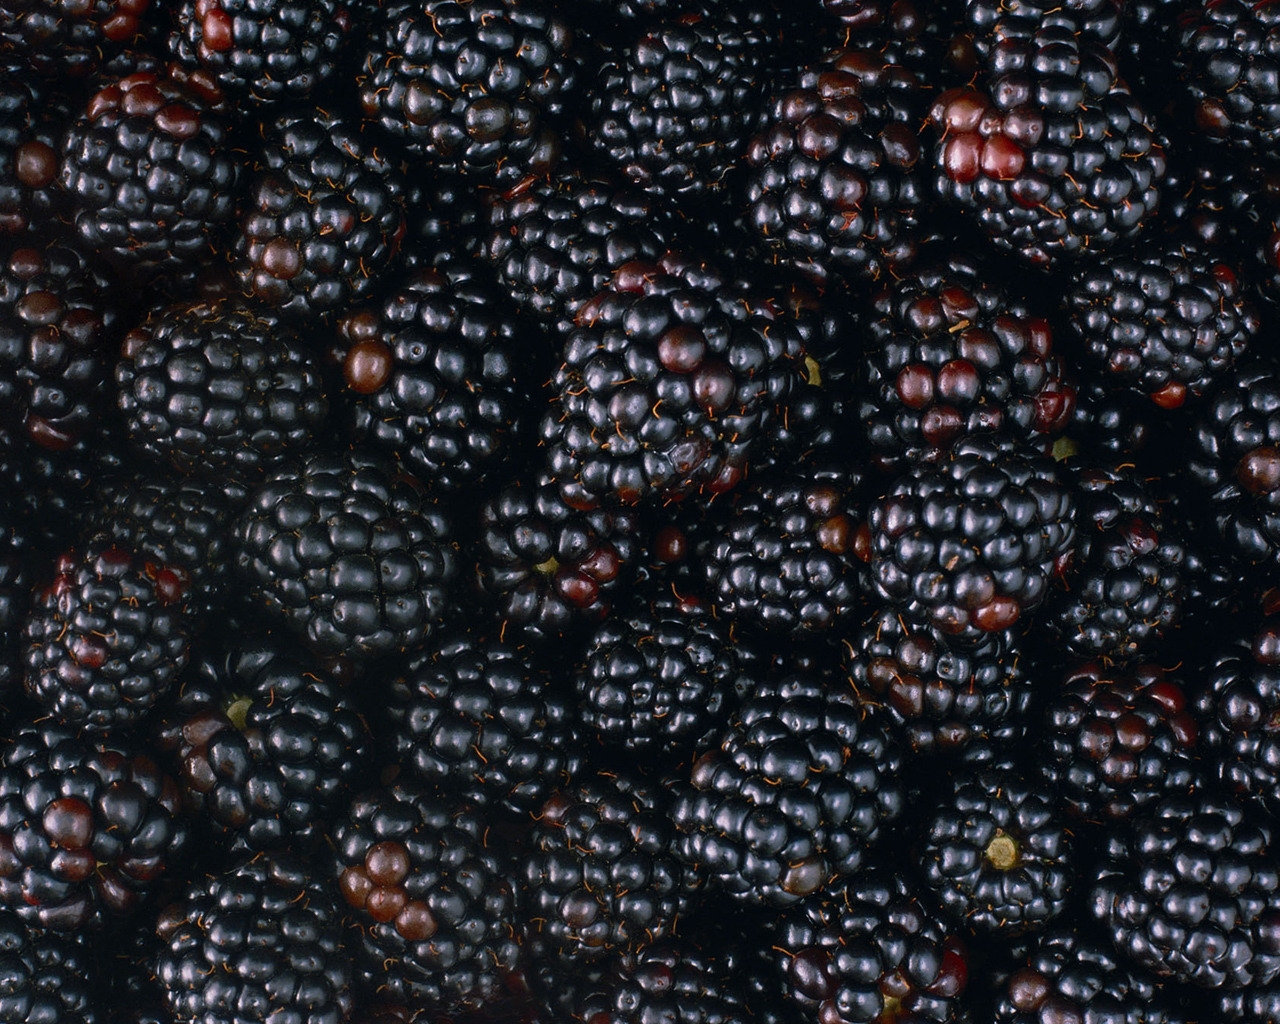 Tasty Blackberries for 1280 x 1024 resolution